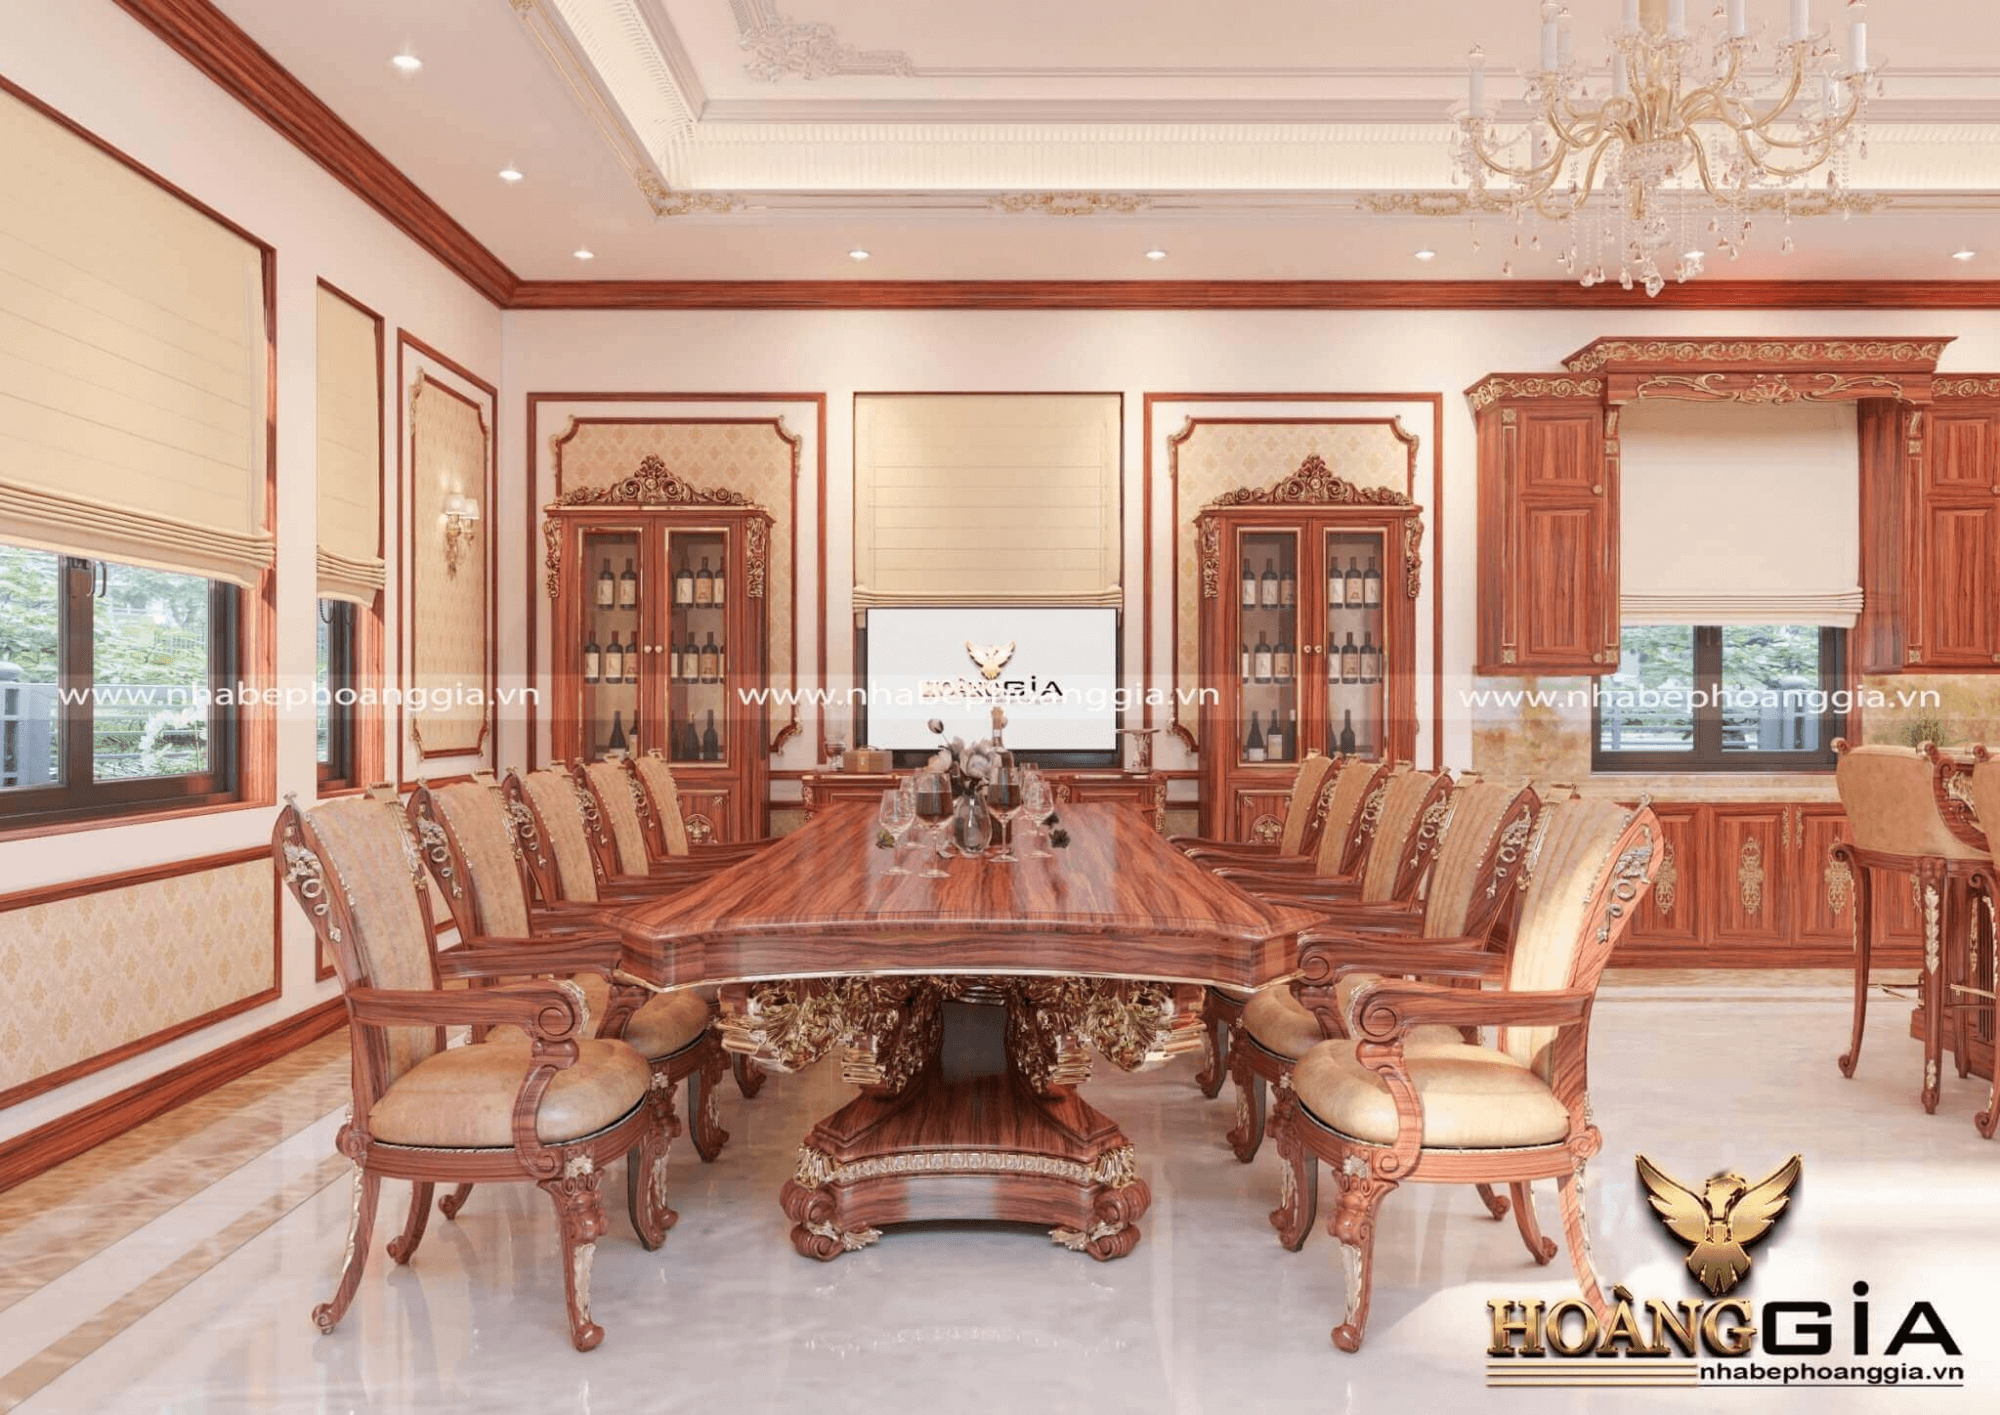 Mẫu bàn ăn 10 ghế dát vàng hoàng gia cao cấp